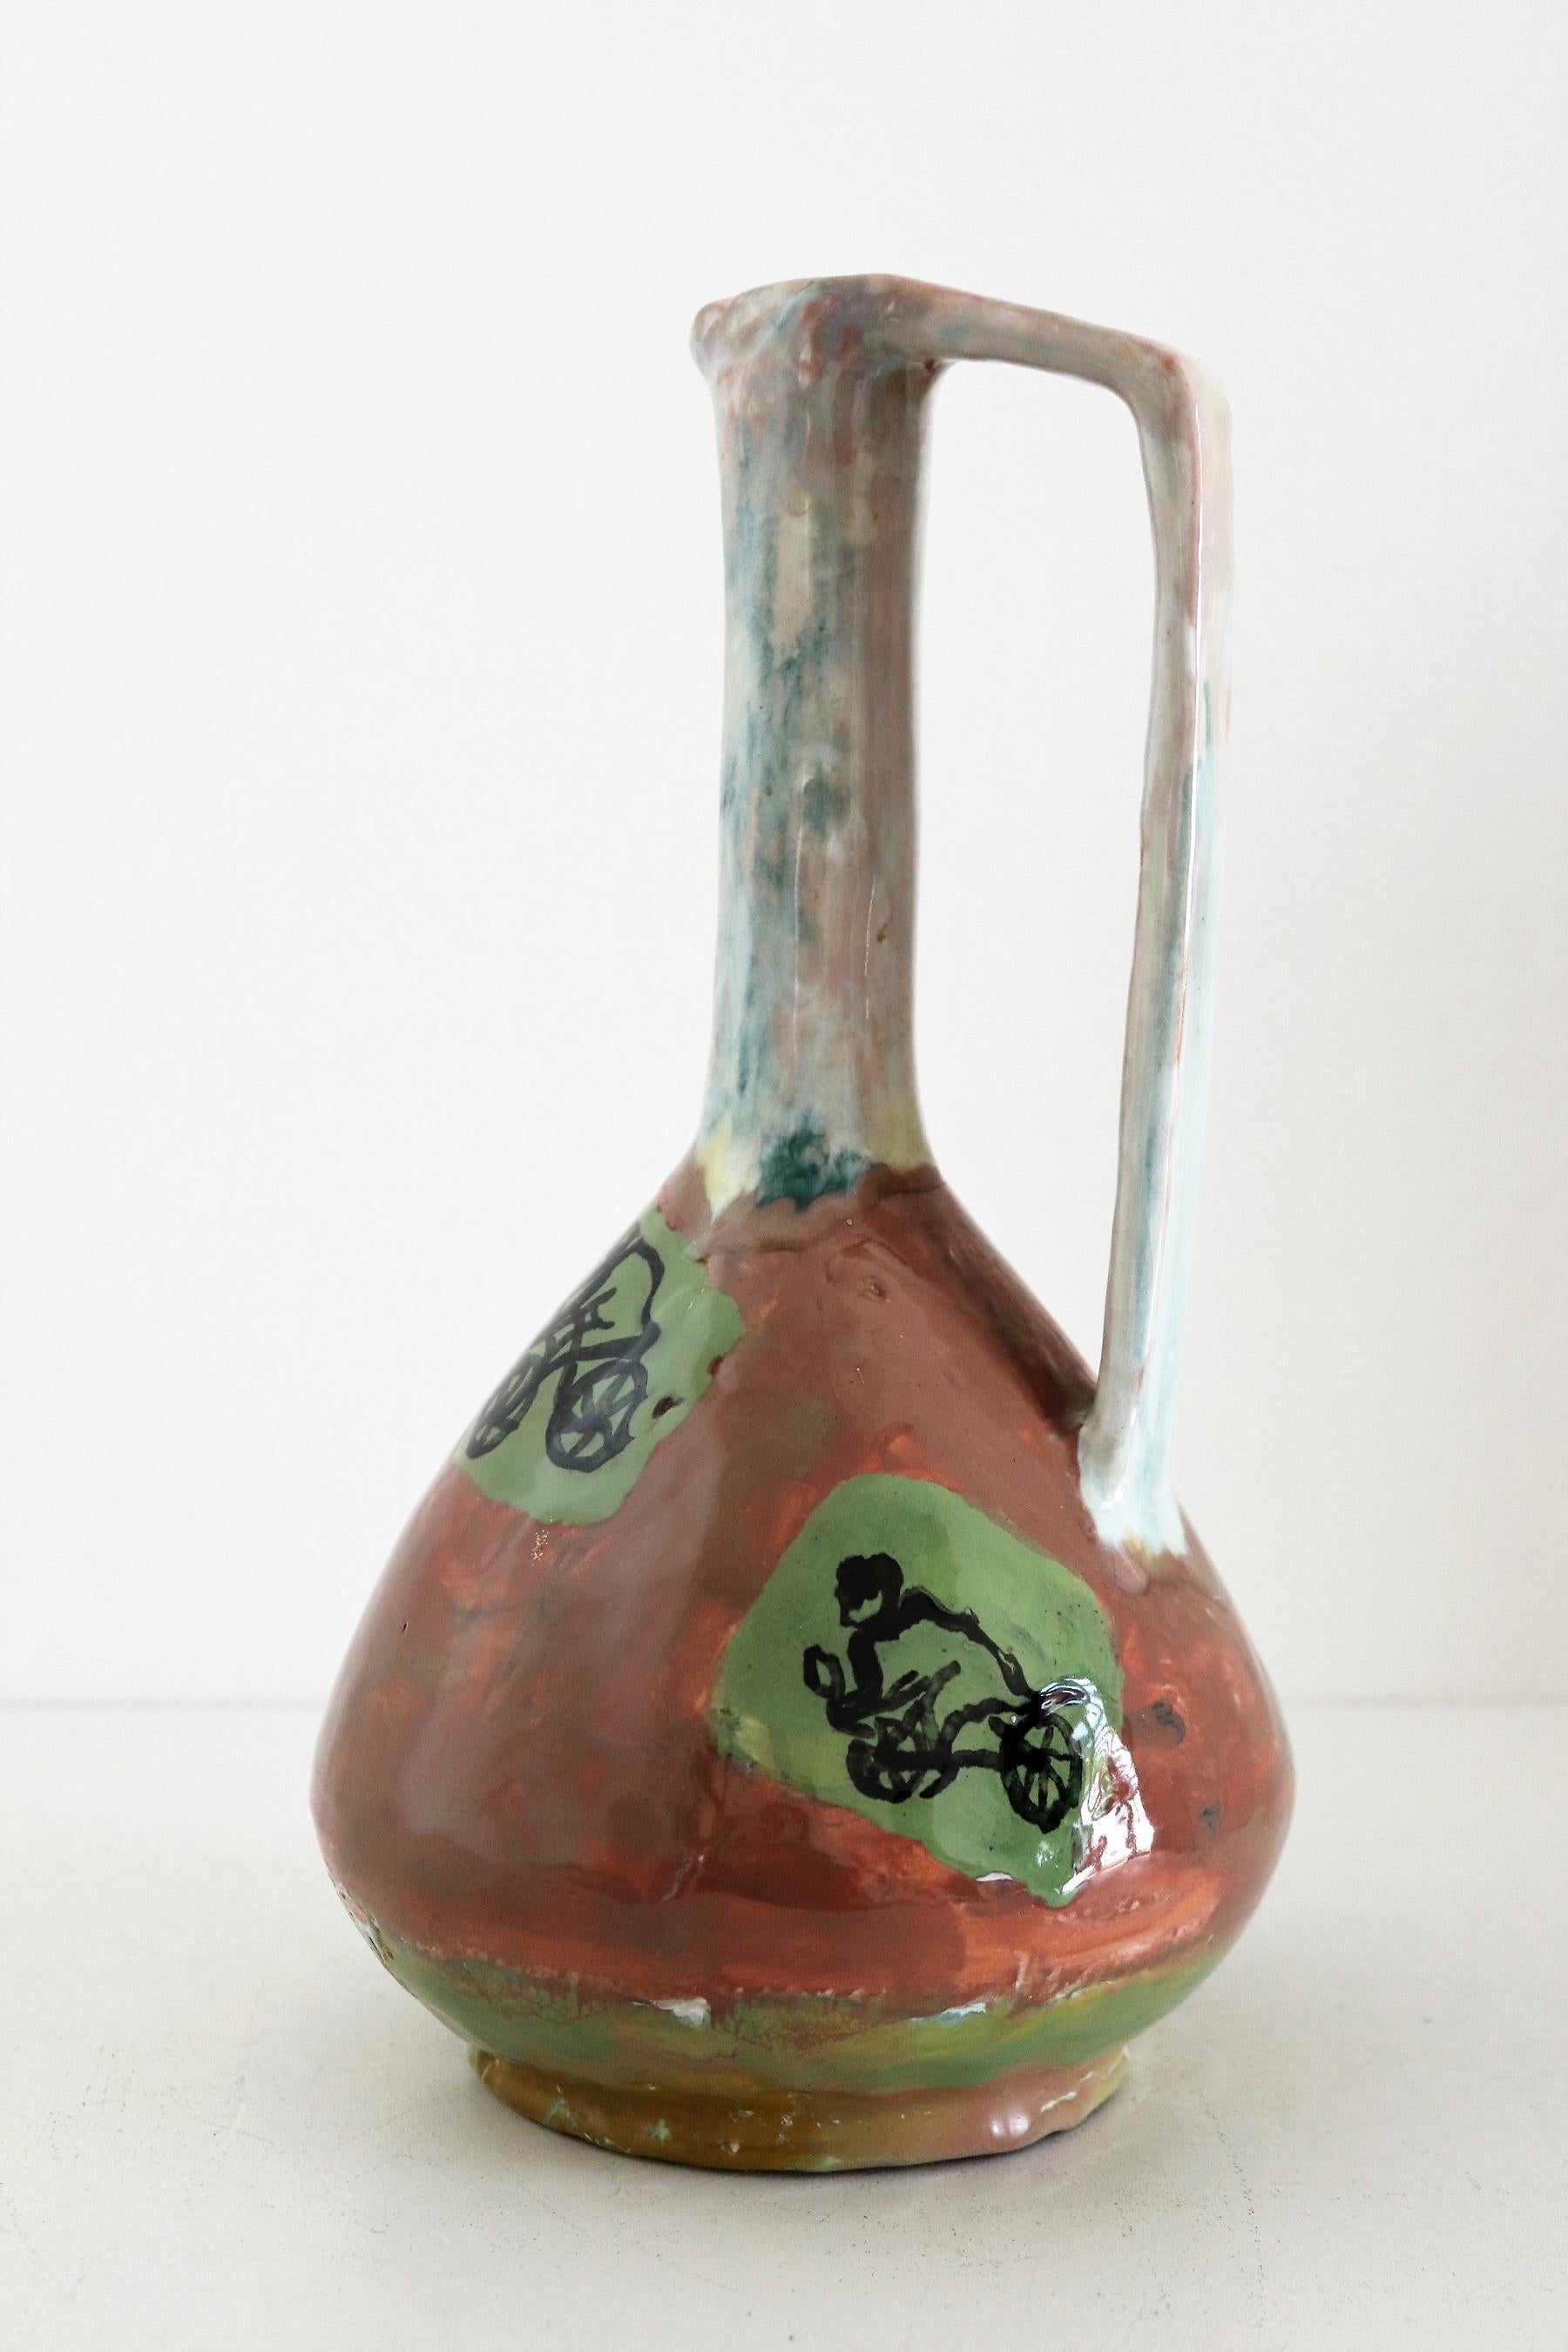 Magnifique et rare vase en céramique unique peint à la main et signé avec D.D.N. par l'artiste du studio de céramique italien Orobico Arte Artigianato (ART RUMI) dans les années 1950.
Le vase est fait de céramique comme de l'argile rouge et peint à